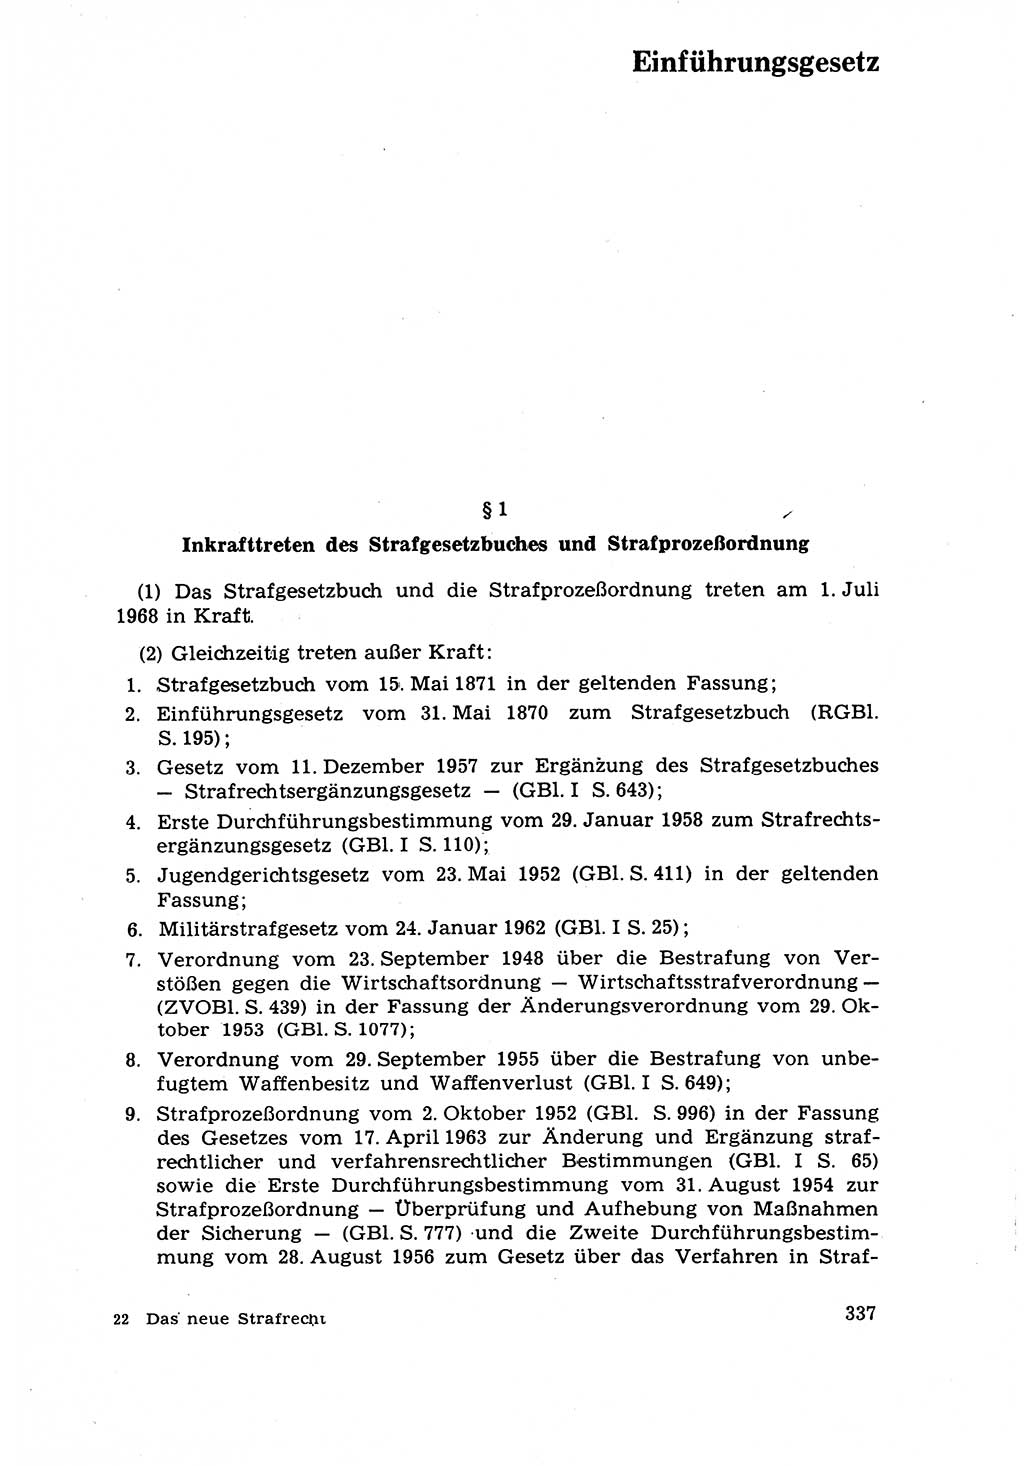 Strafrecht [Deutsche Demokratische Republik (DDR)] 1968, Seite 337 (Strafr. DDR 1968, S. 337)